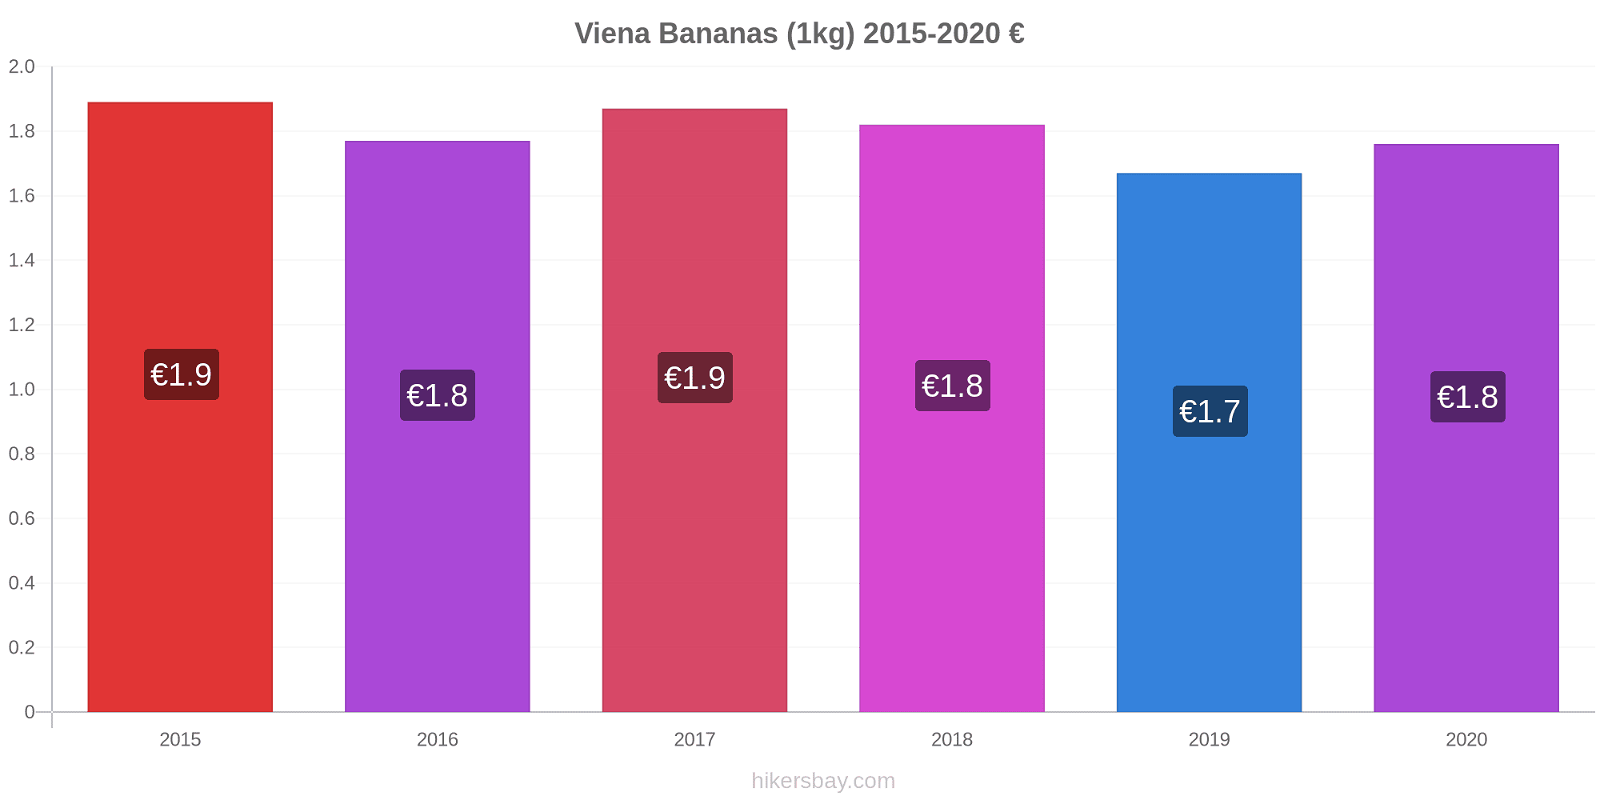 Viena variação de preço Banana (1kg) hikersbay.com